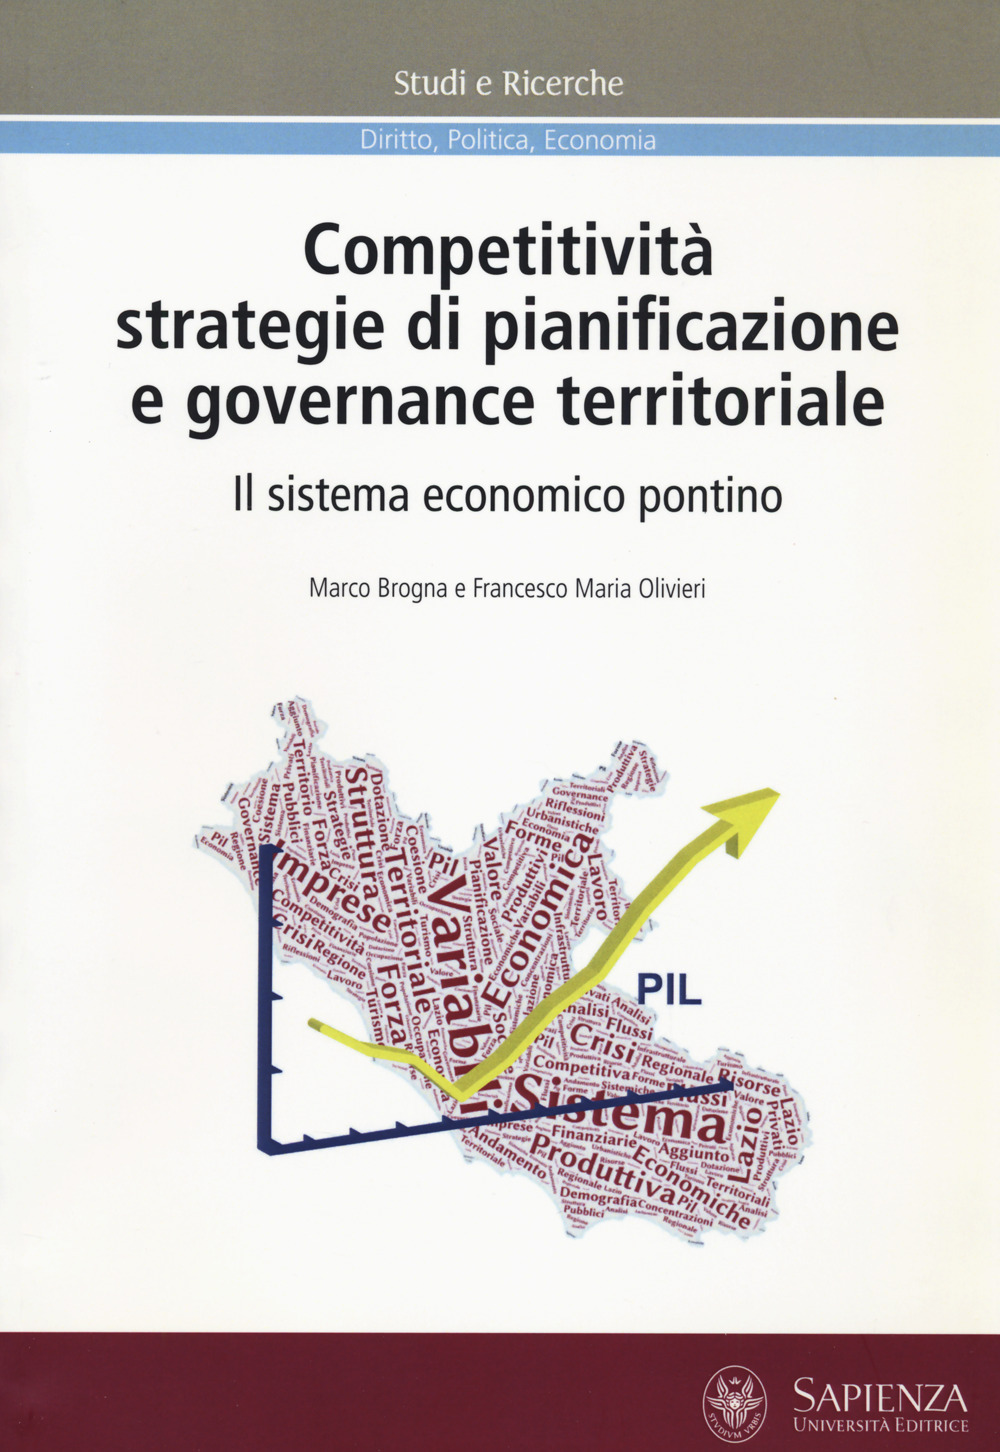 Competitività, strategie di pianificazione e governance territoriale. Il sistema economico pontino